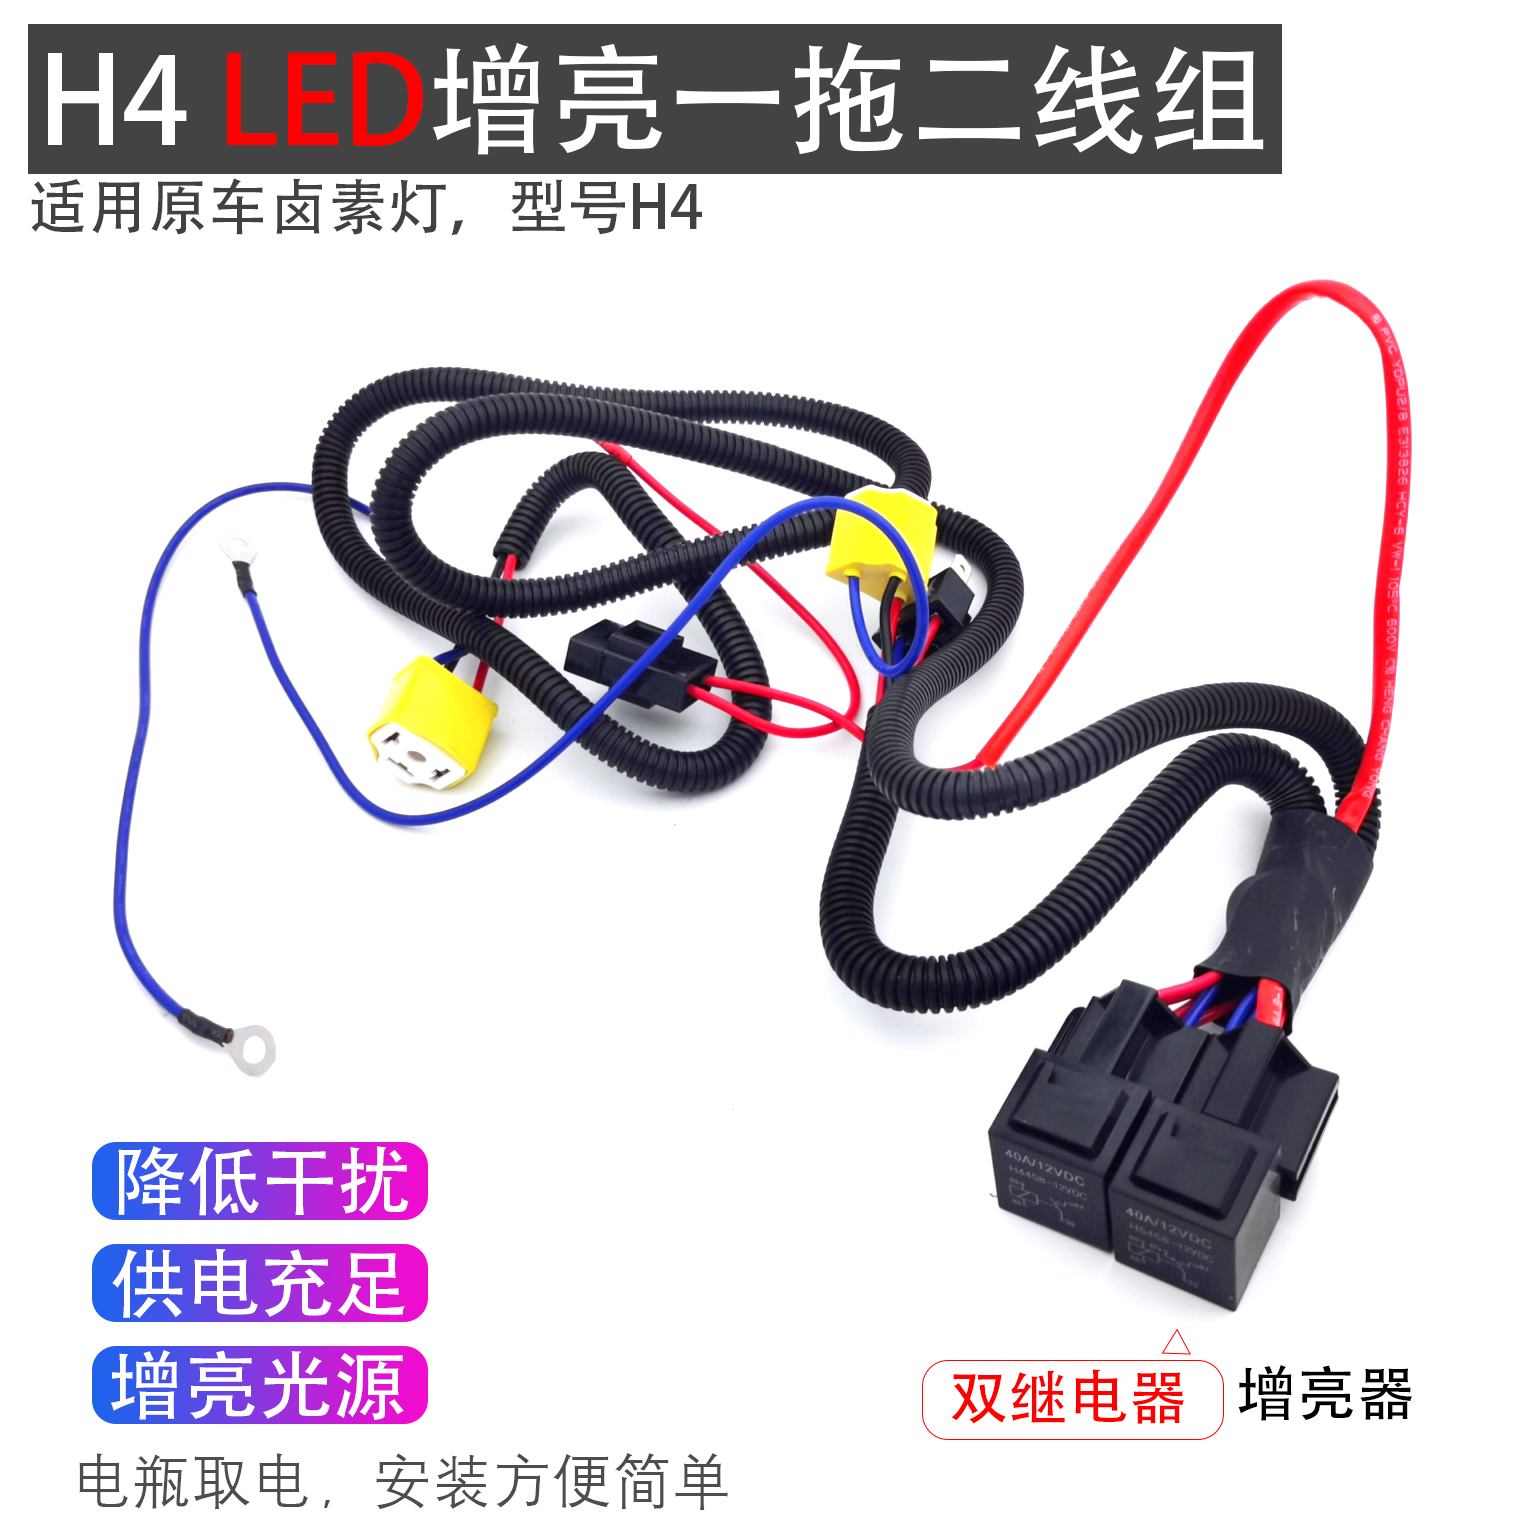 h4氙气灯线束LED大灯加强一拖二线组直接从电瓶取电线组降低干扰